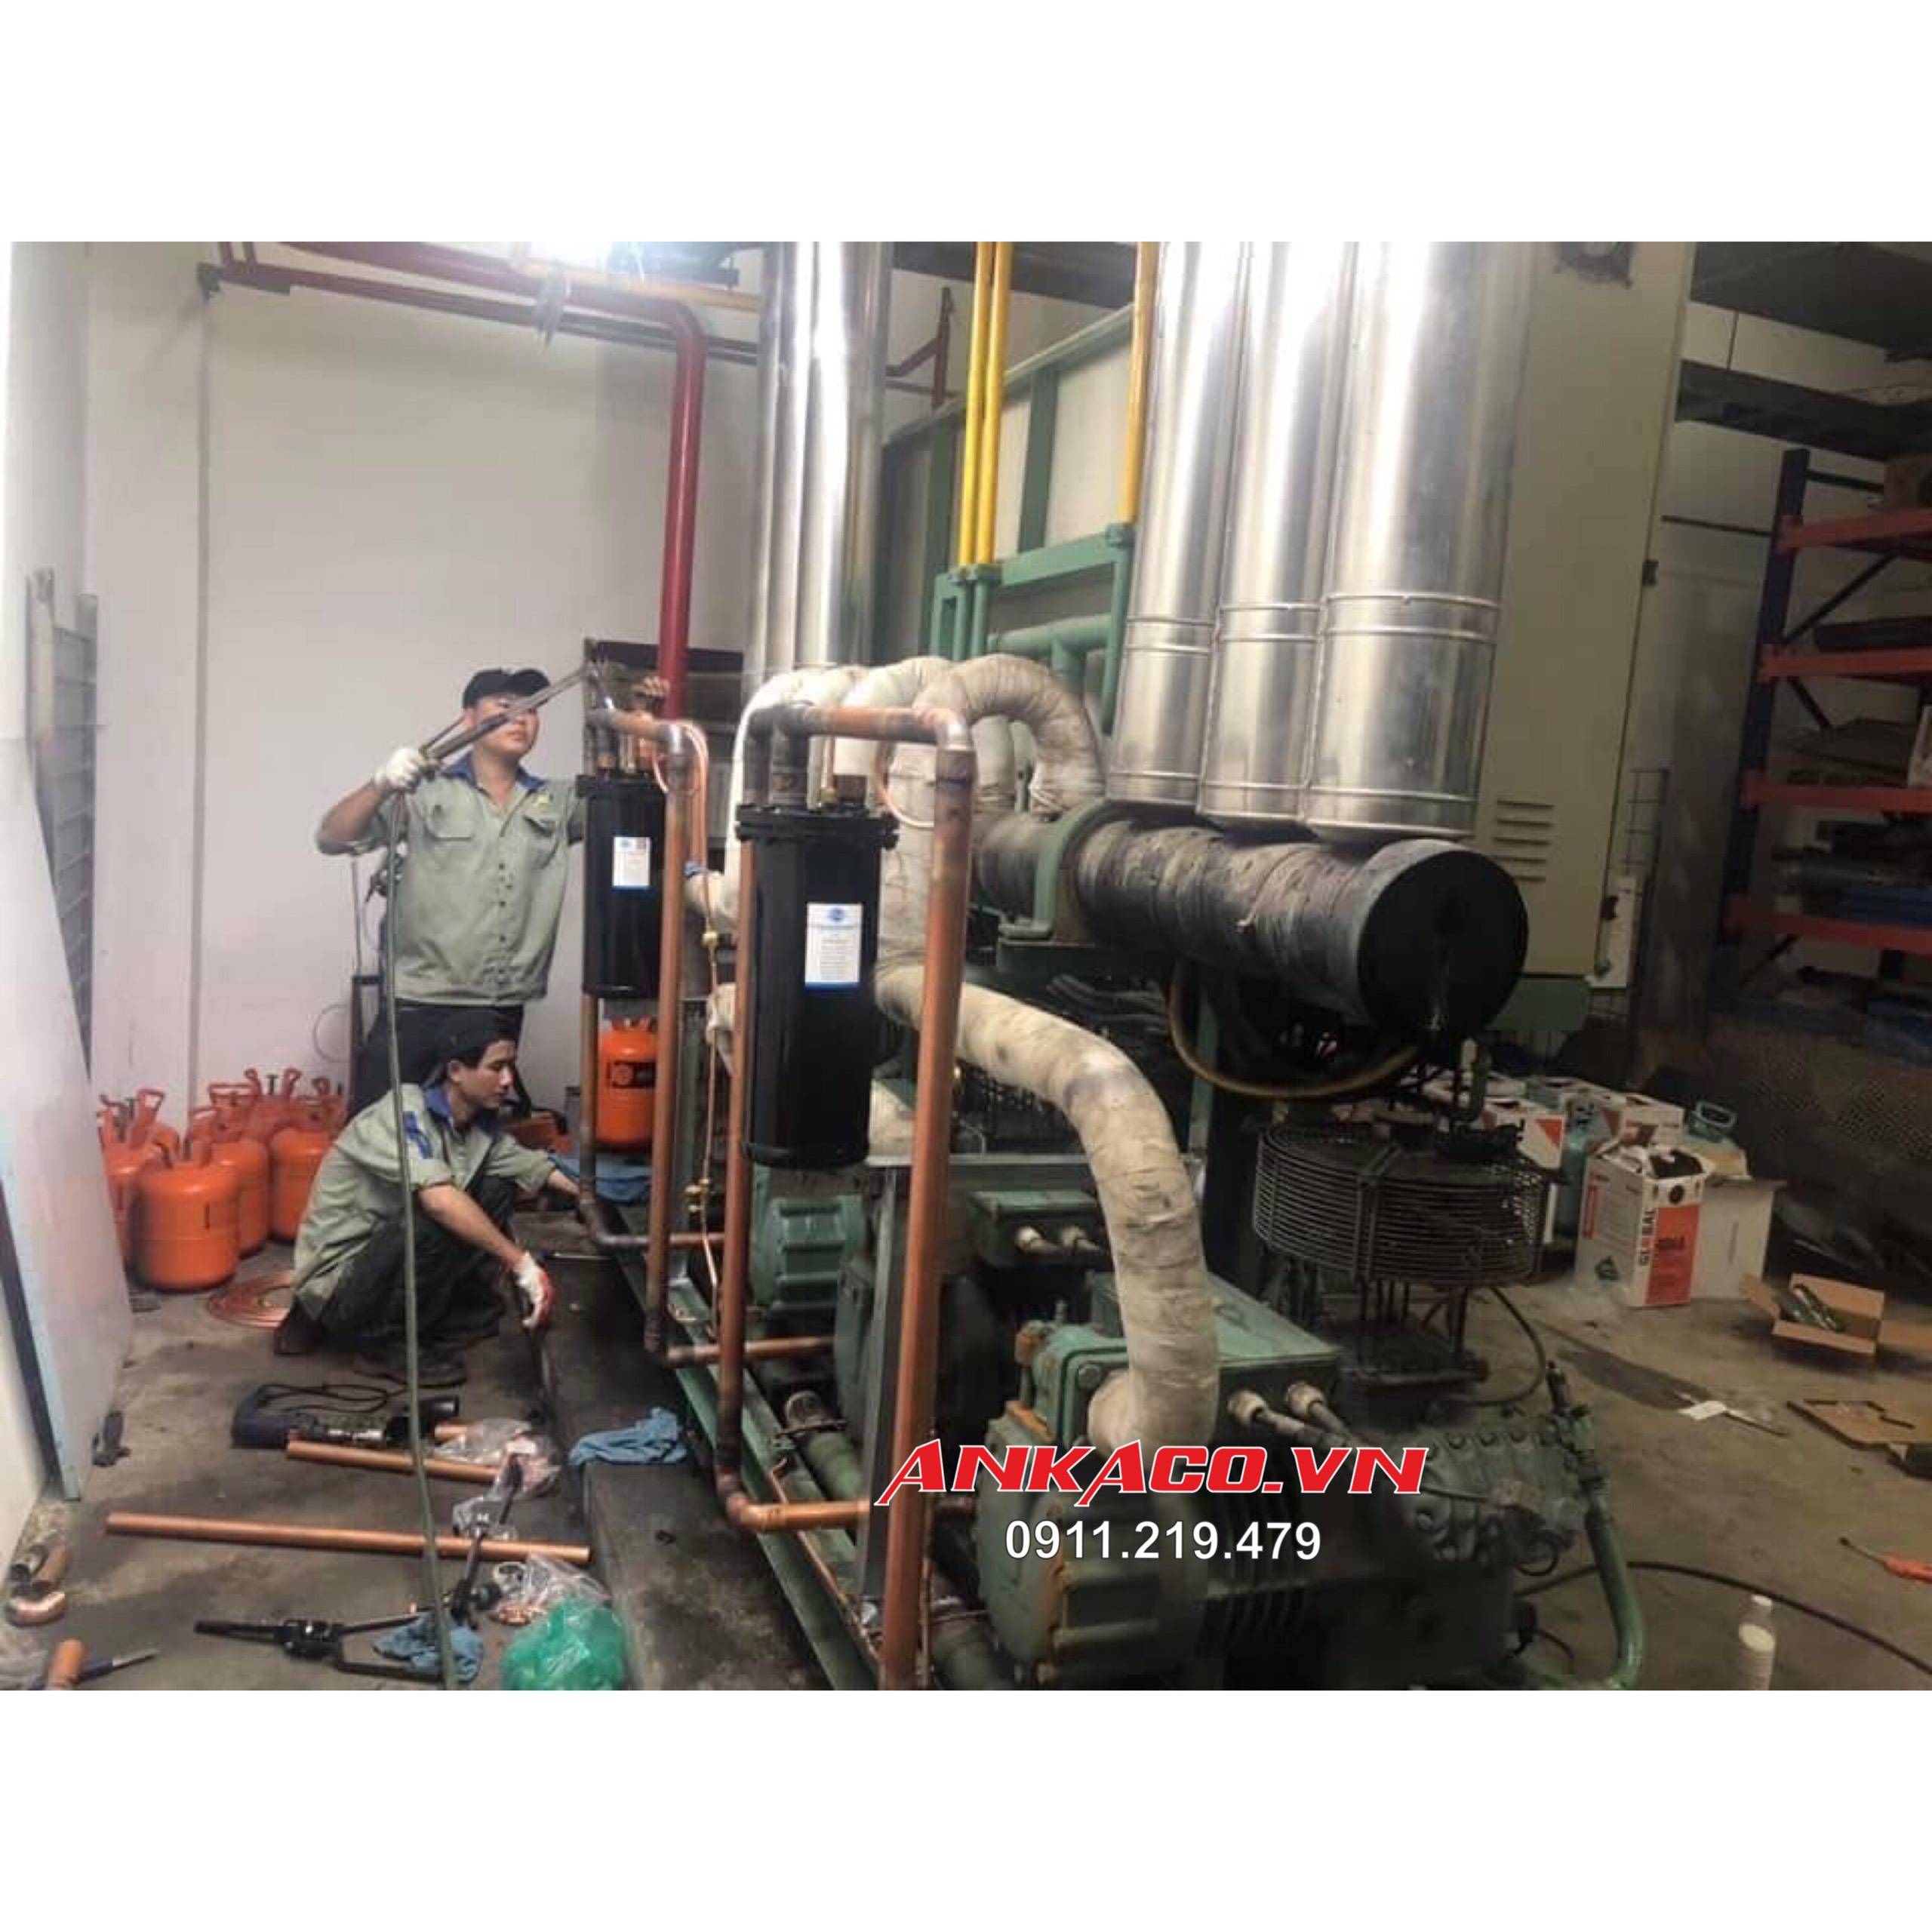 (( 0947.459.479)) Nhận sửa chữa máy làm lạnh nước tận nơi tại Quảng Ngãi , An Khang